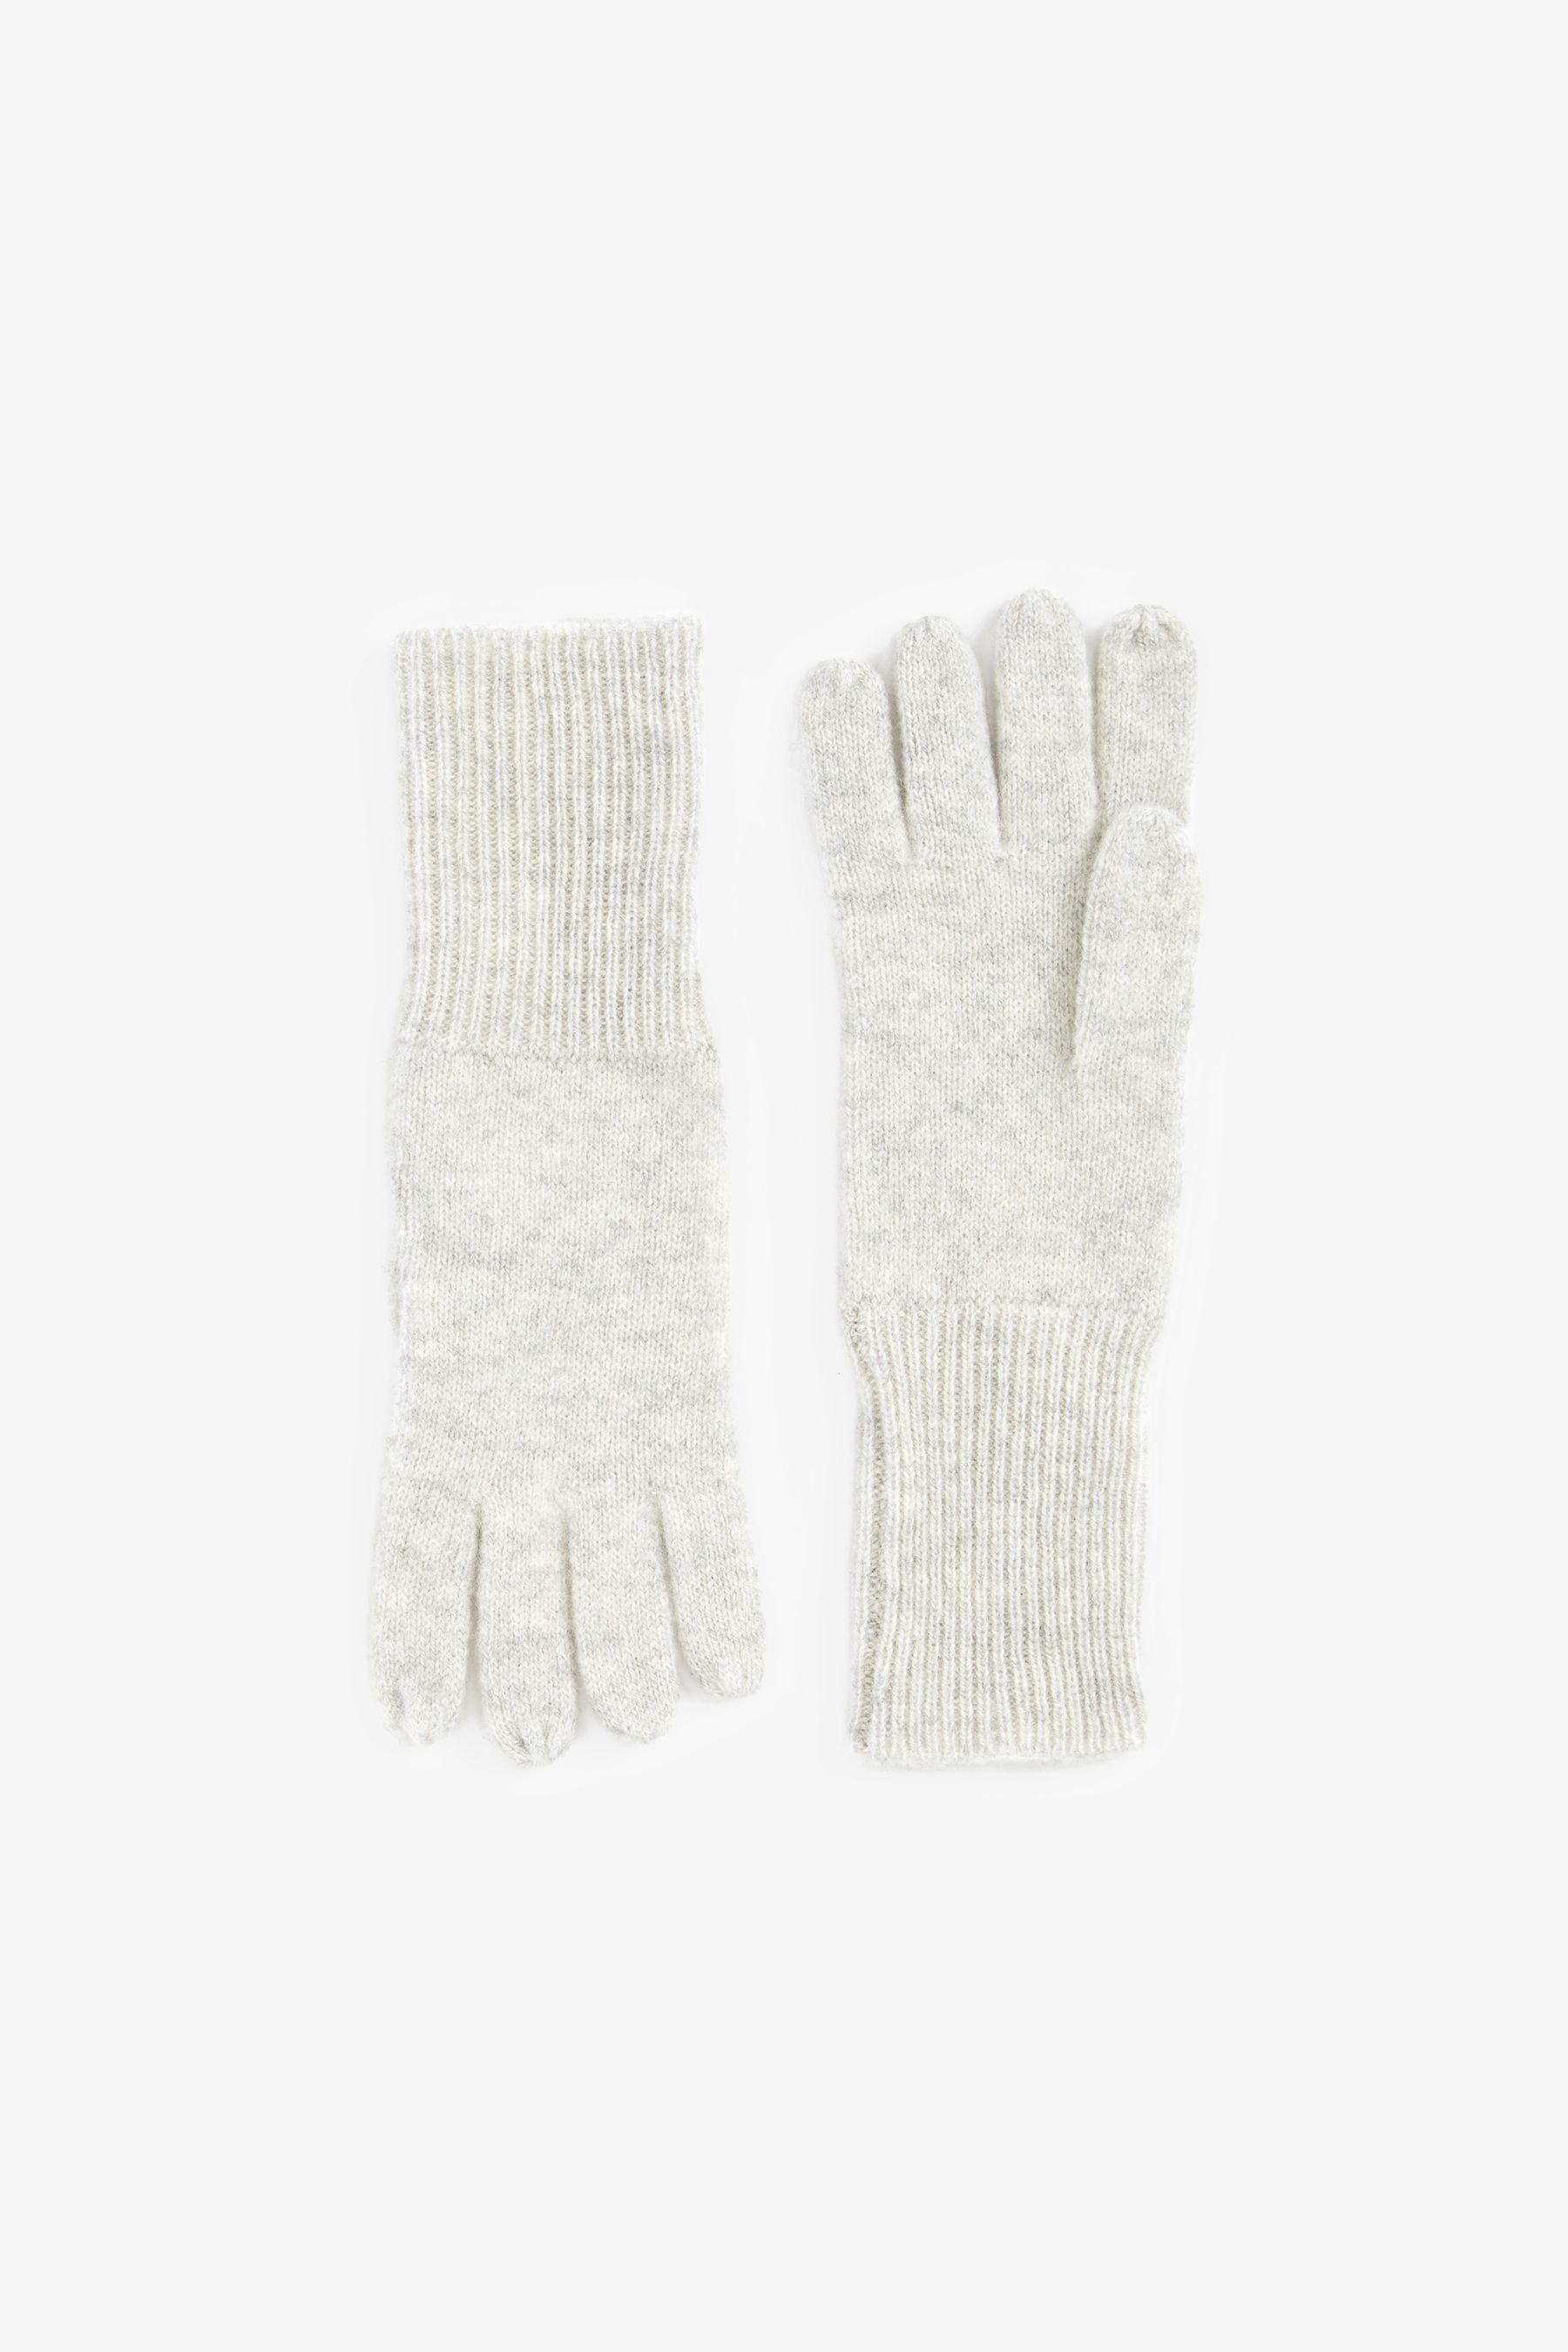 Next Strickhandschuhe Collection Luxe Handschuhe aus 100 % Kaschmir Grey